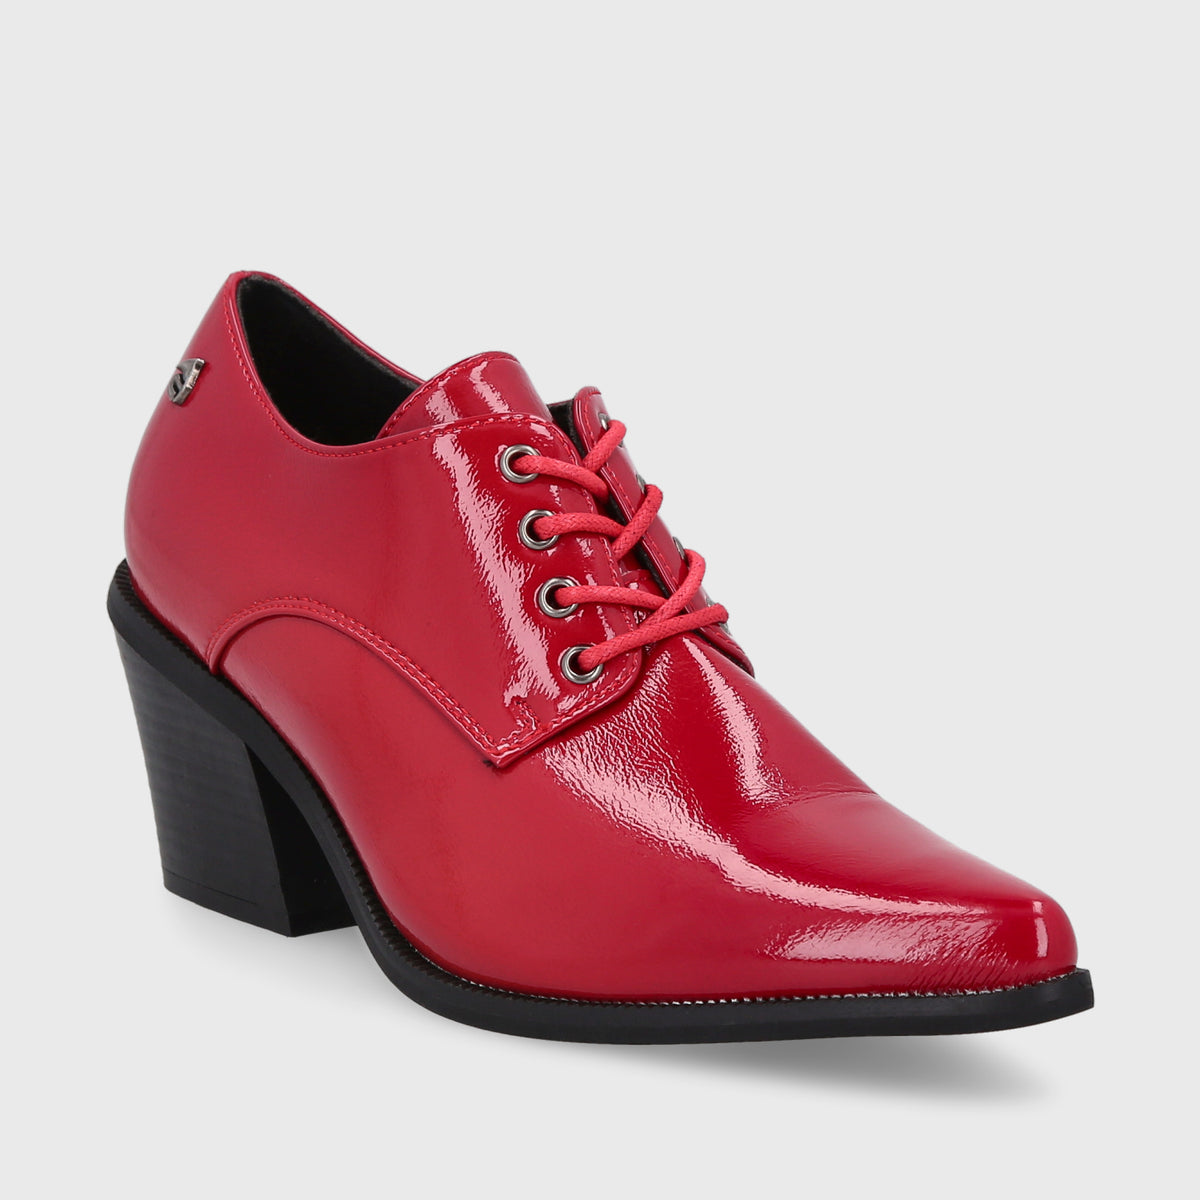 Zapato Taco Rojo Mujer 33763